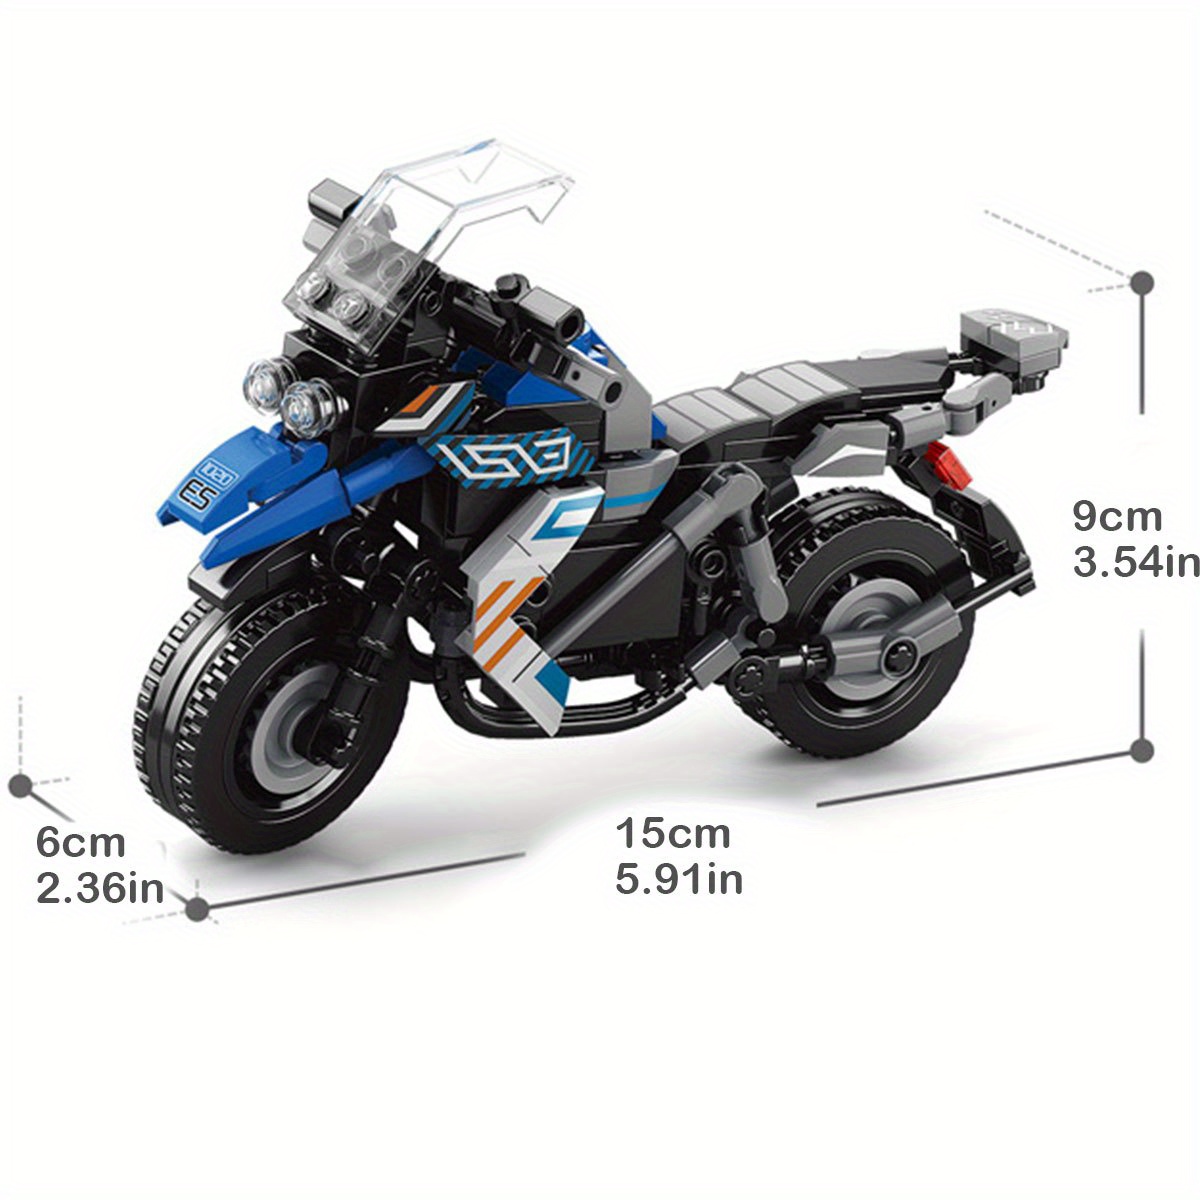 Toda la información para elegir el equipaje de moto ~ EnjoyTheRide